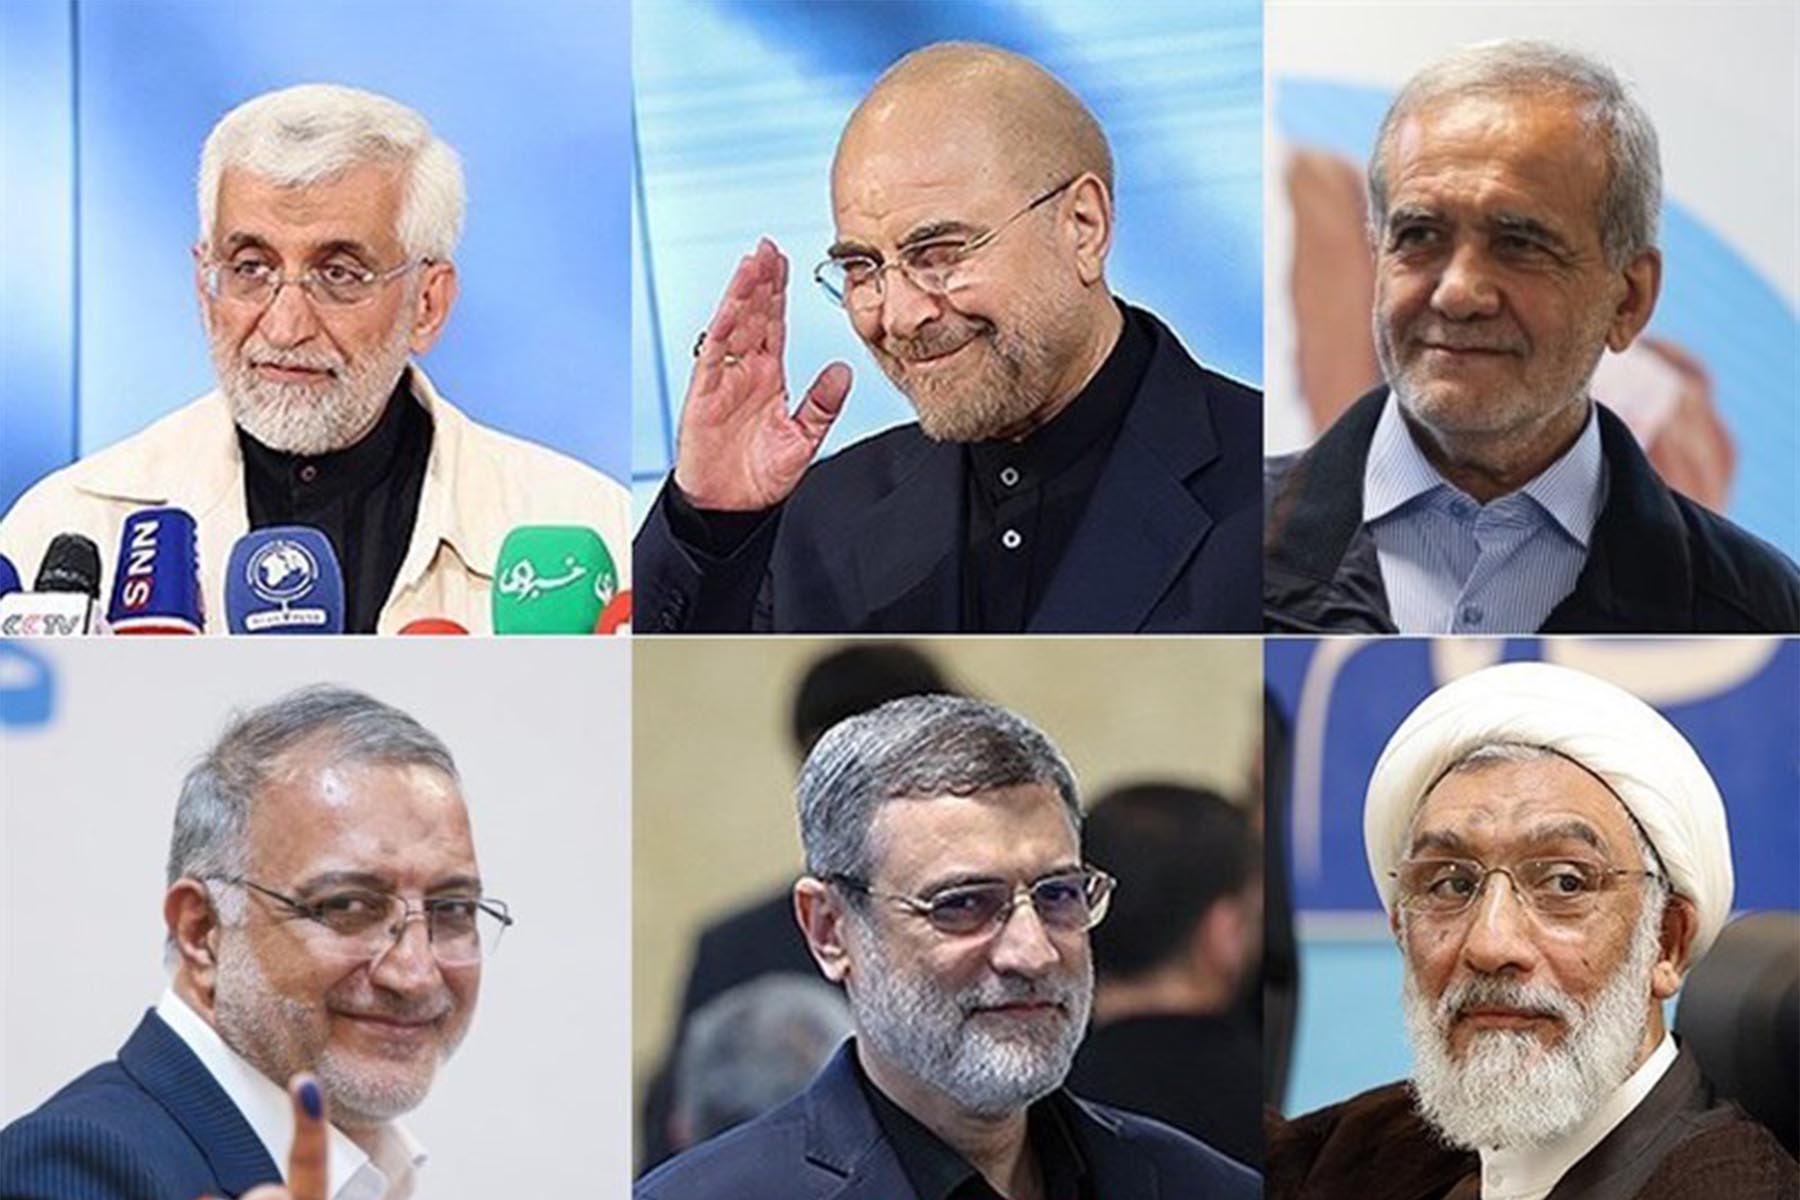 دیدگاه گاردین درباره انتخابات ریاست جمهوری ایران: انتخاب بیشتر، اما امید واقعی کمی برای تغییر